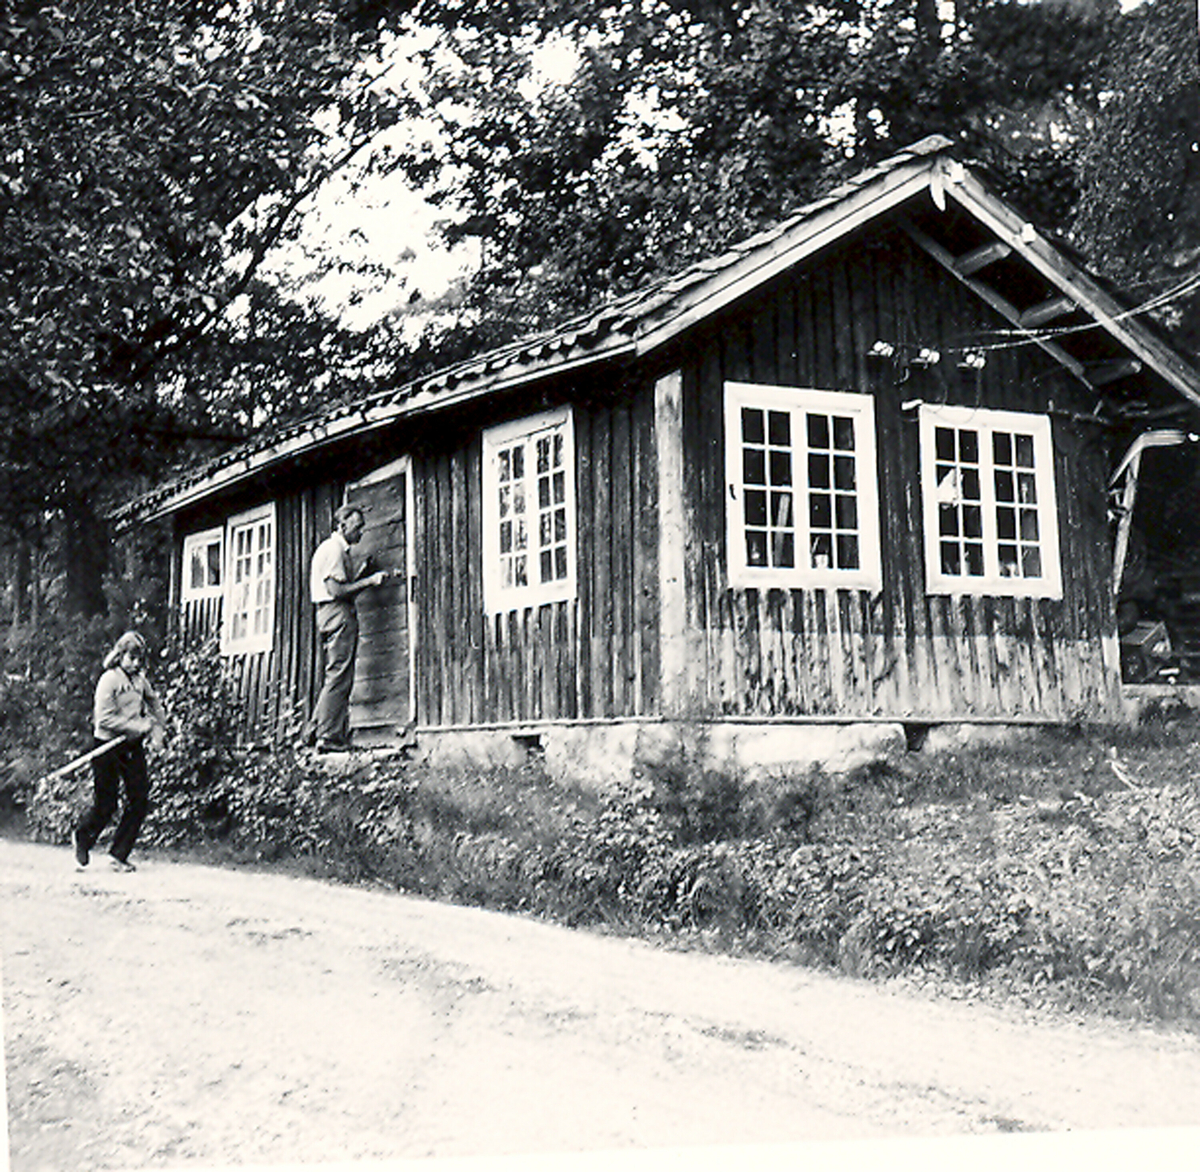 Ved eit hus i skogen.  Tatt i 1974.